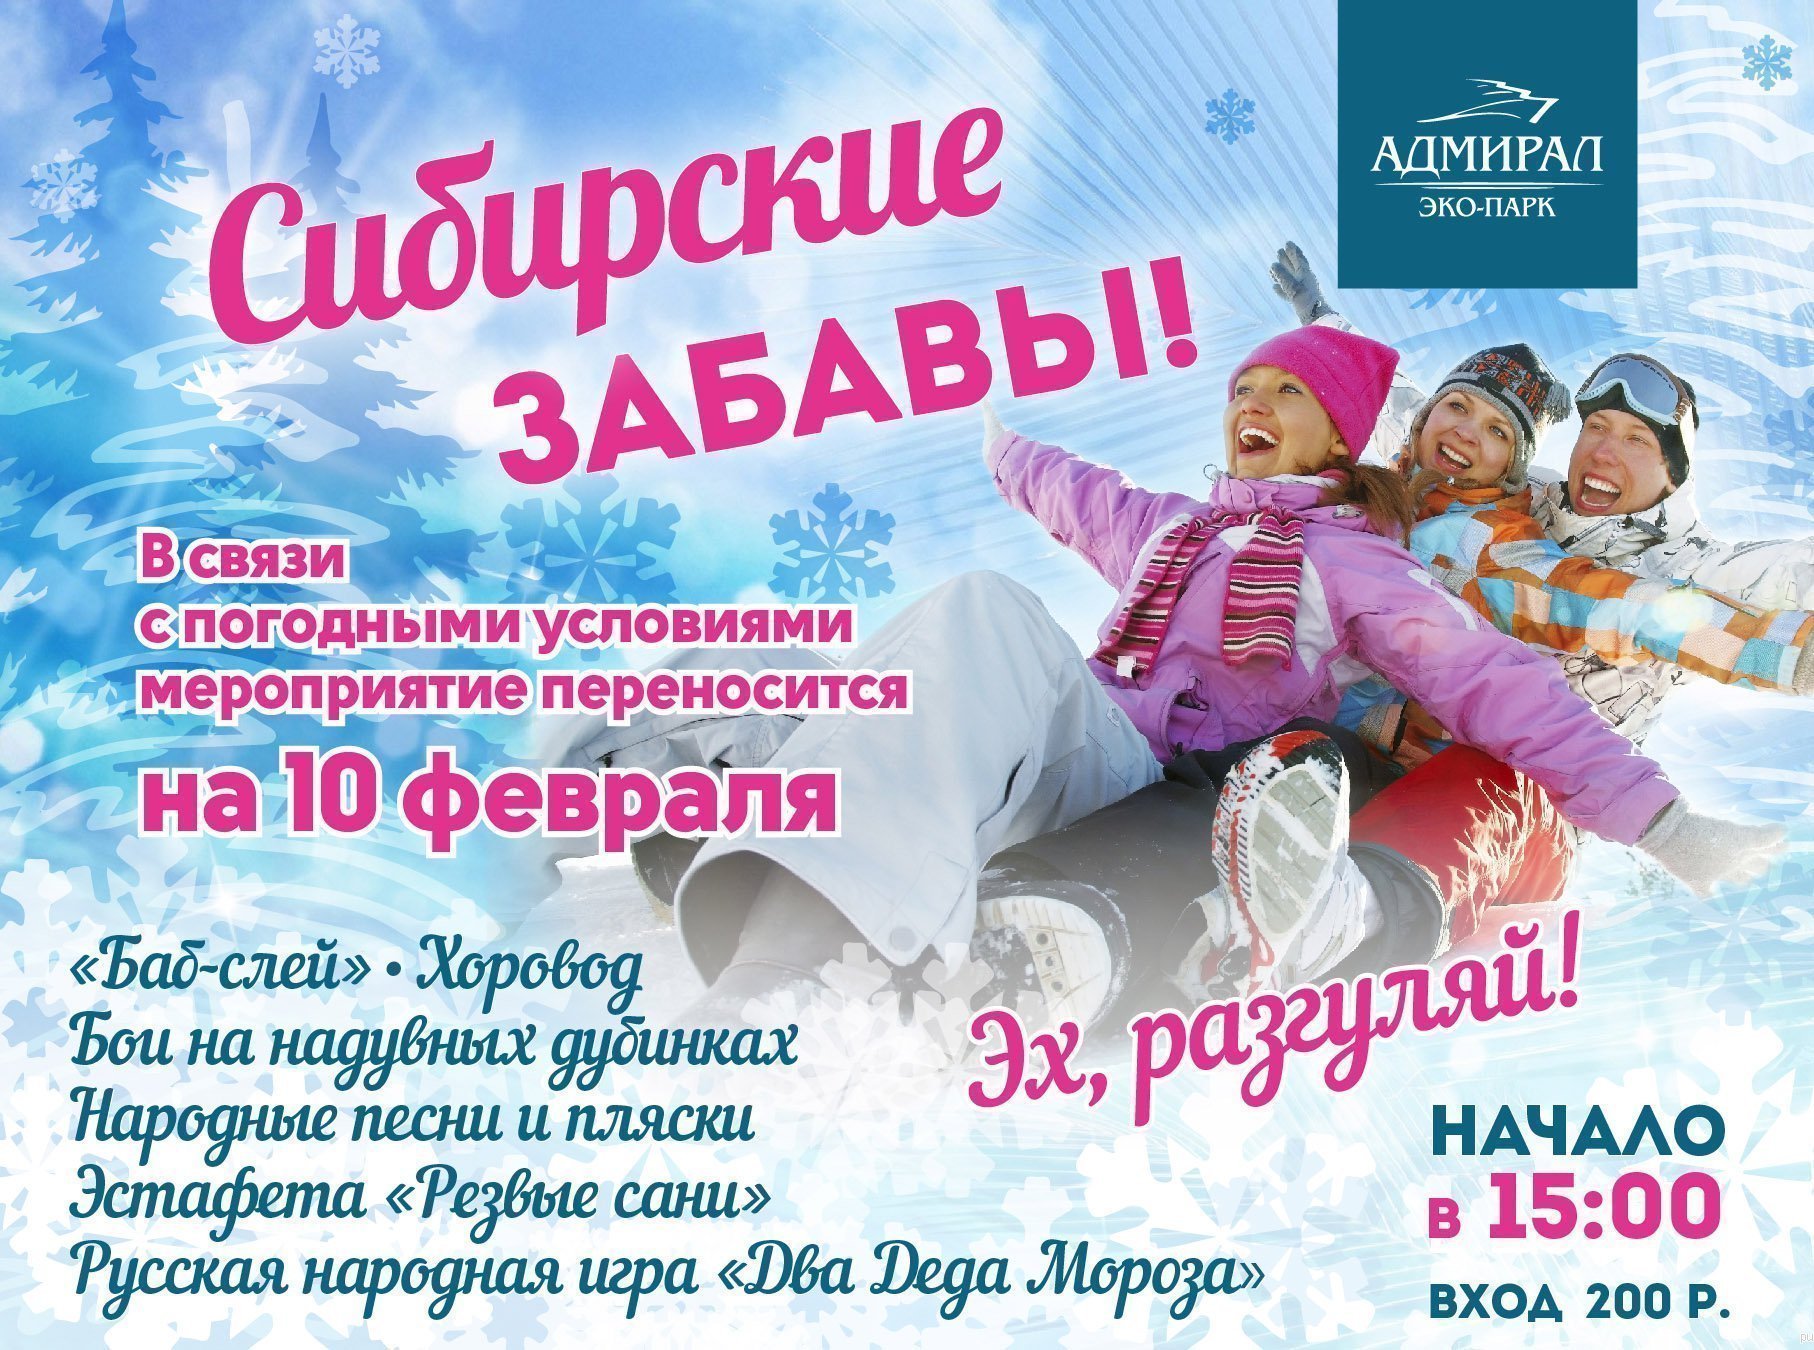 Программа "Сибирские Забавы" | Эко-Парк Адмирал